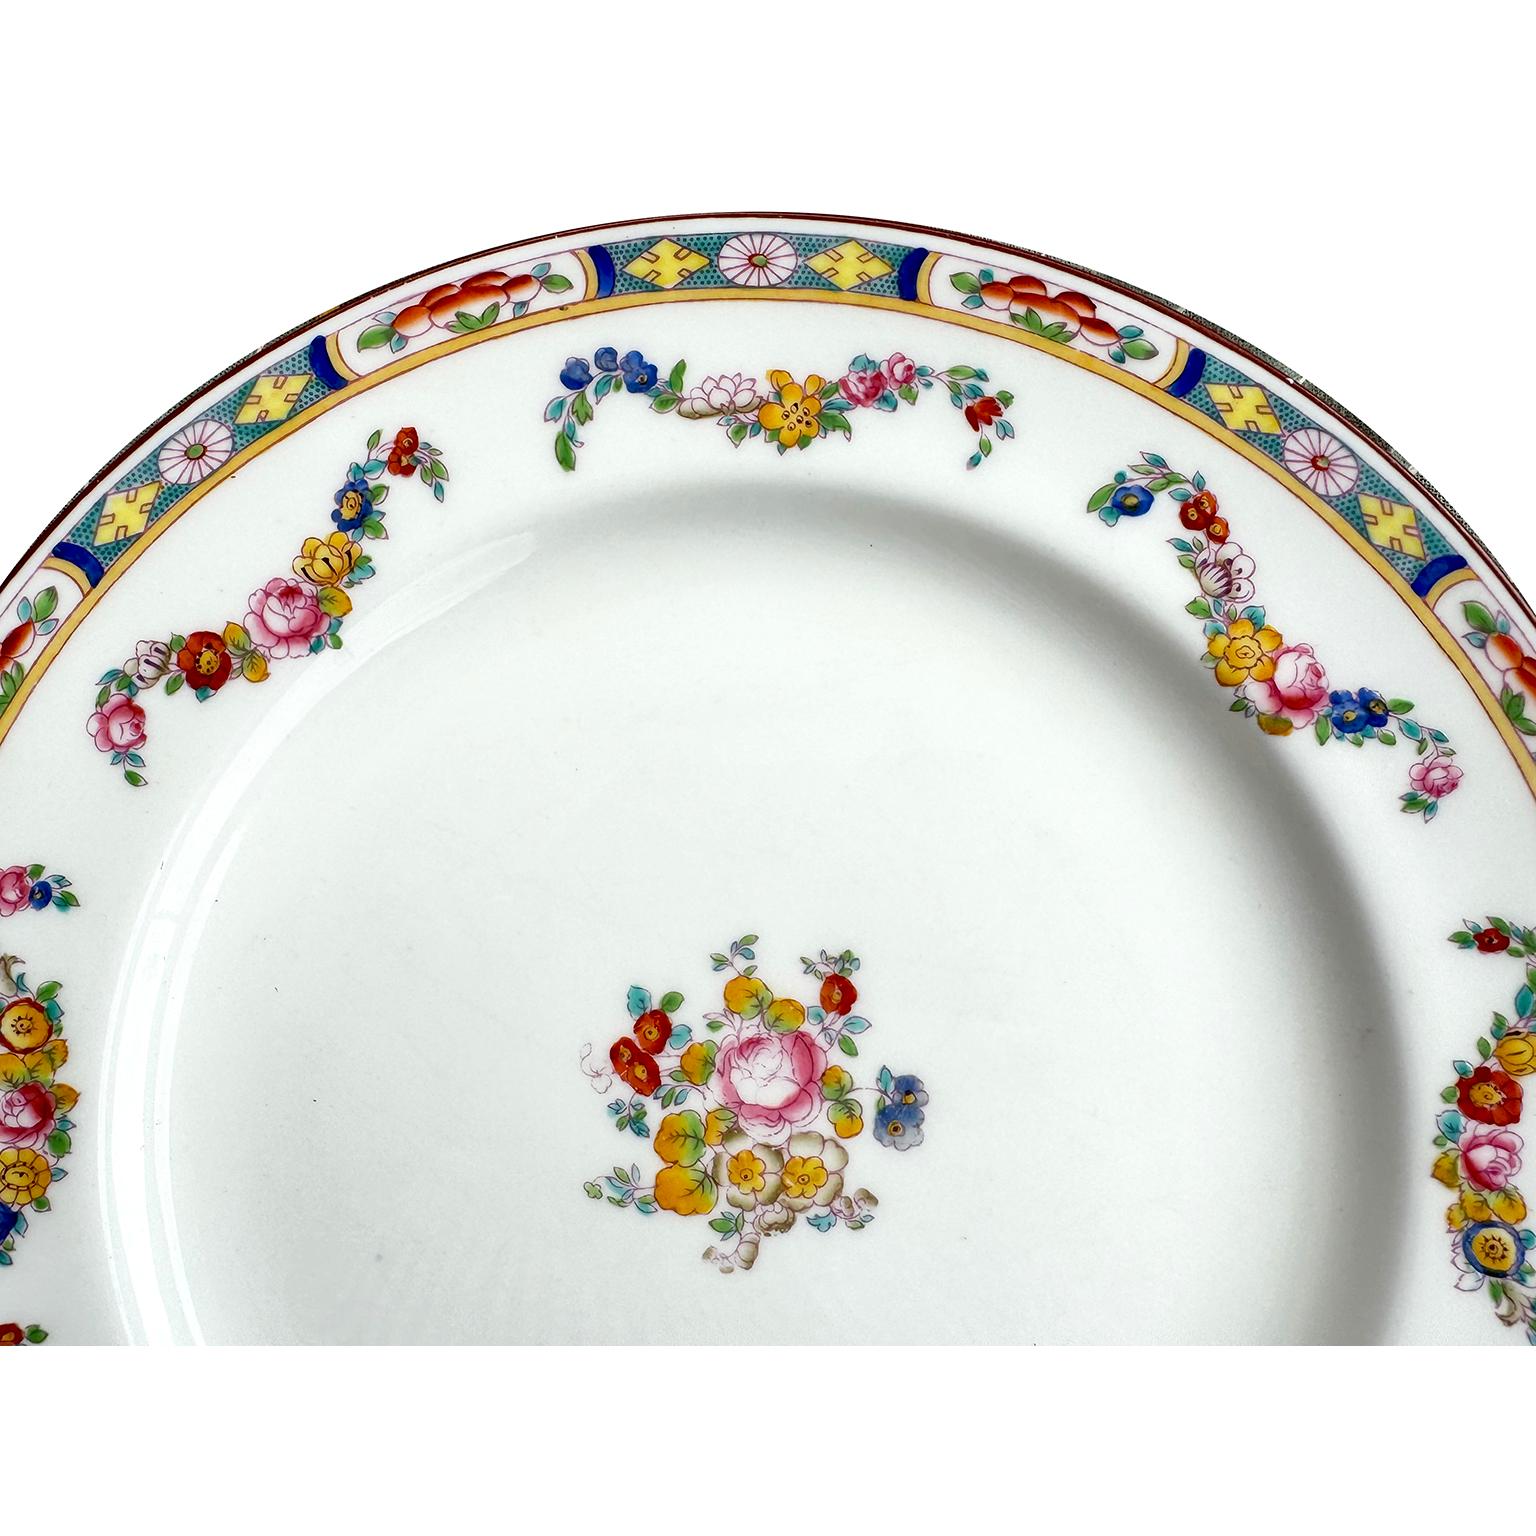 Ein Satz von 34 englischen handverzierten Minton Fine China Speisetellern. Die wunderschön farbenfrohen, handbemalten Essteller sind mit einem farbenfrohen Blumenmuster, einer aufwendigen Verzierung und gestanzten Blumensträngen versehen, in deren